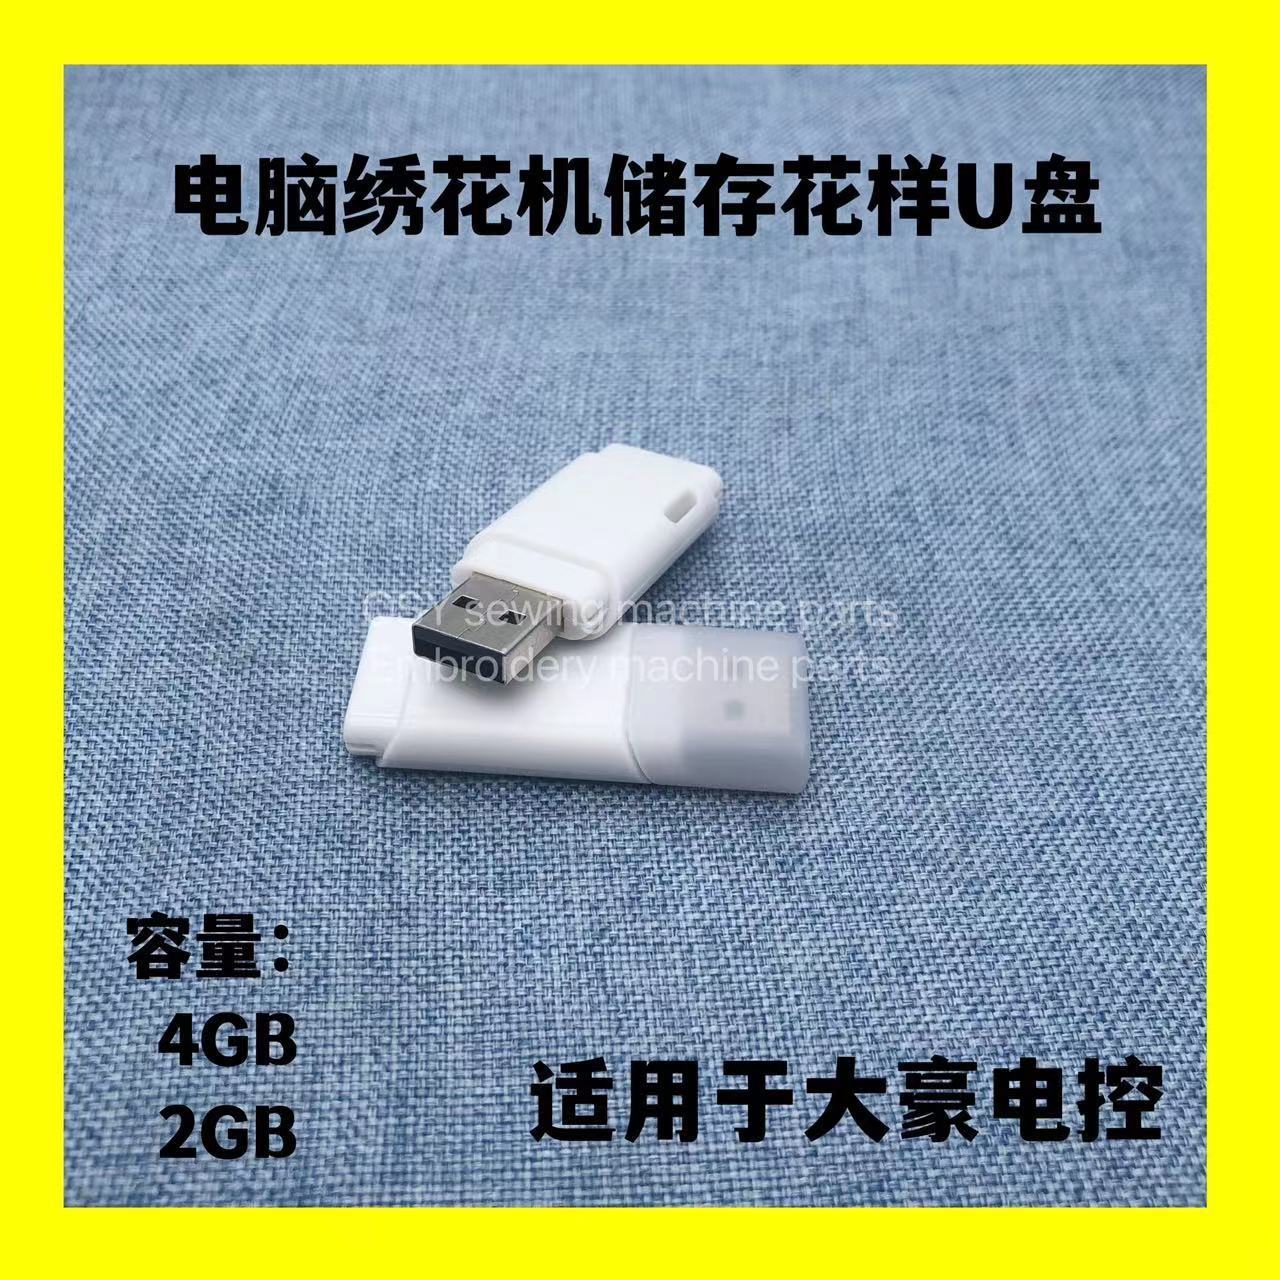 电脑绣花机配件 大豪U盘USB 2GB 4GB 绣花机花样存储器